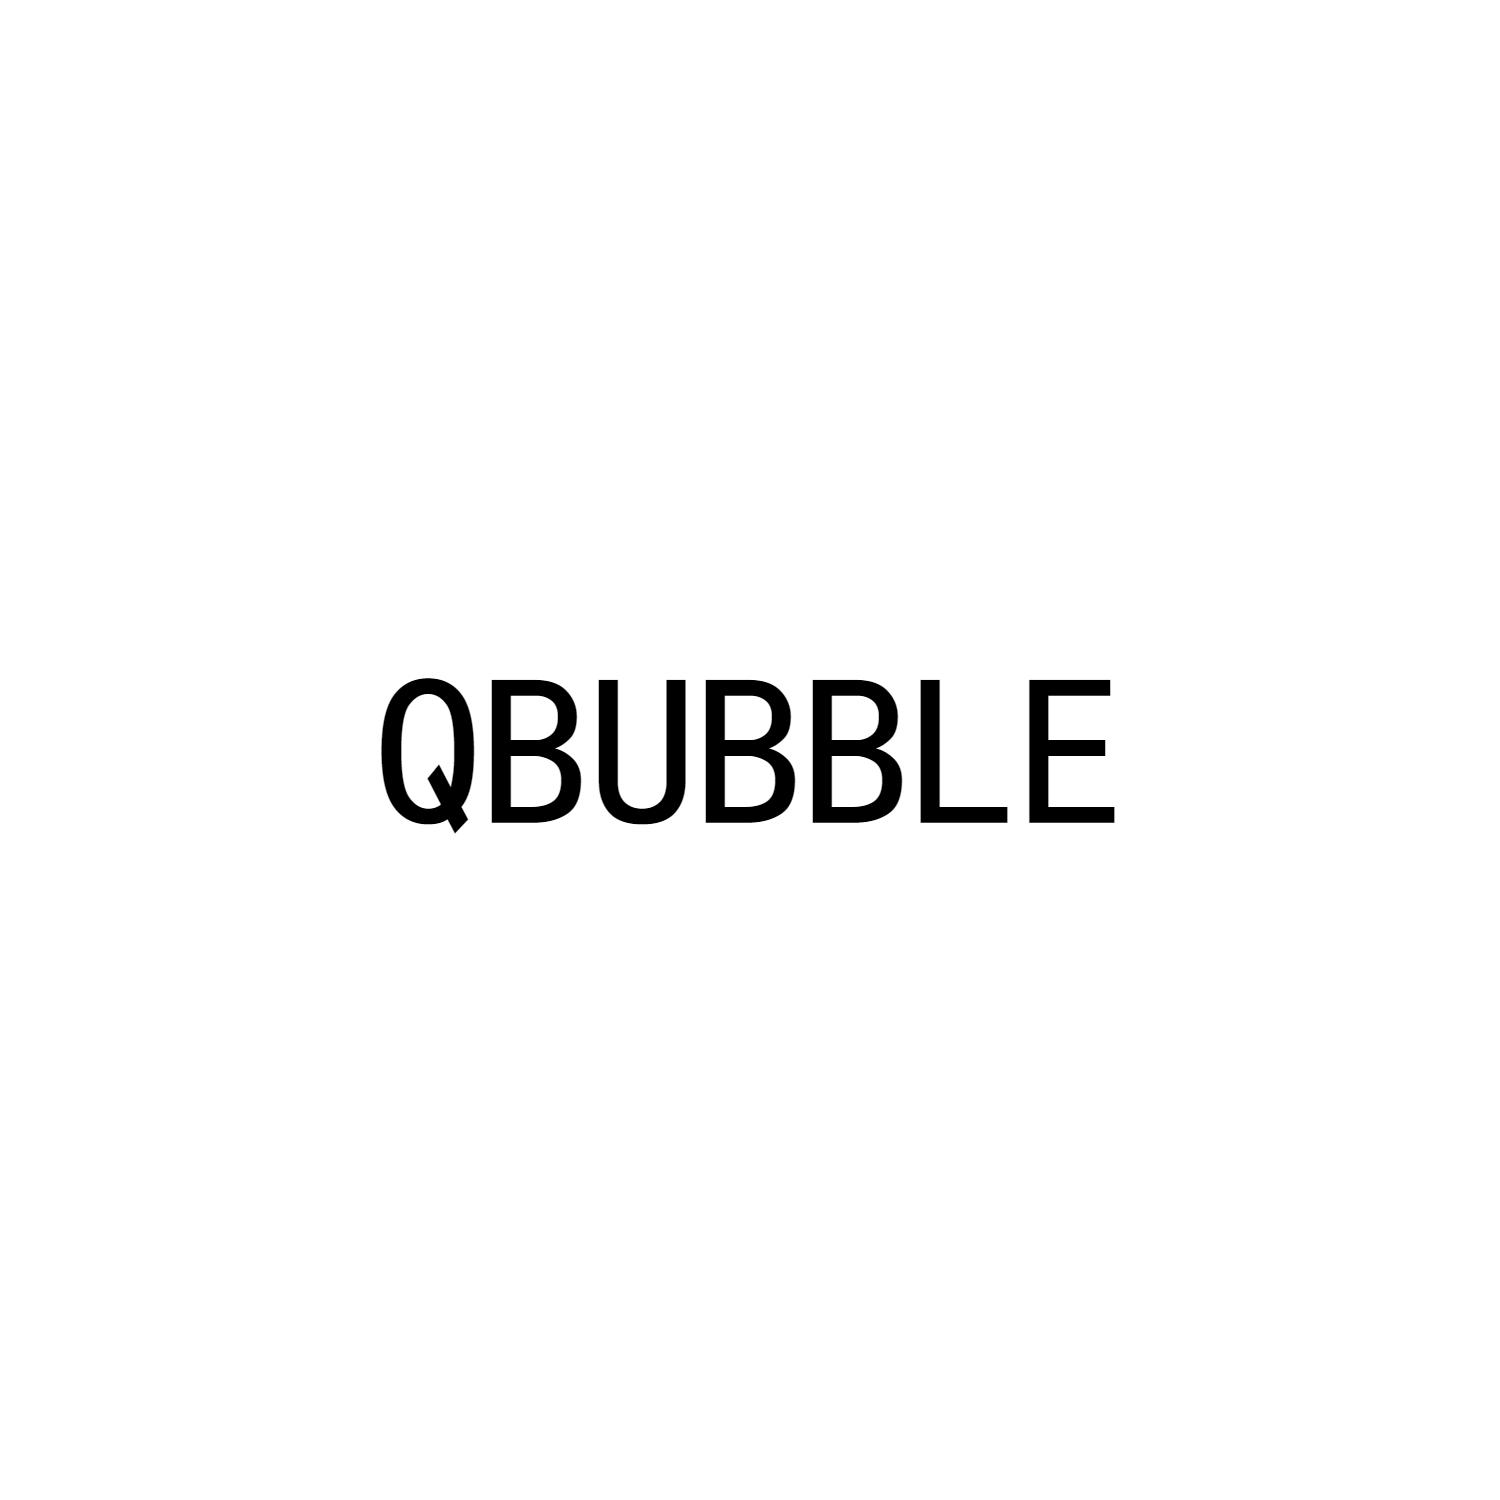 QBUBBLE